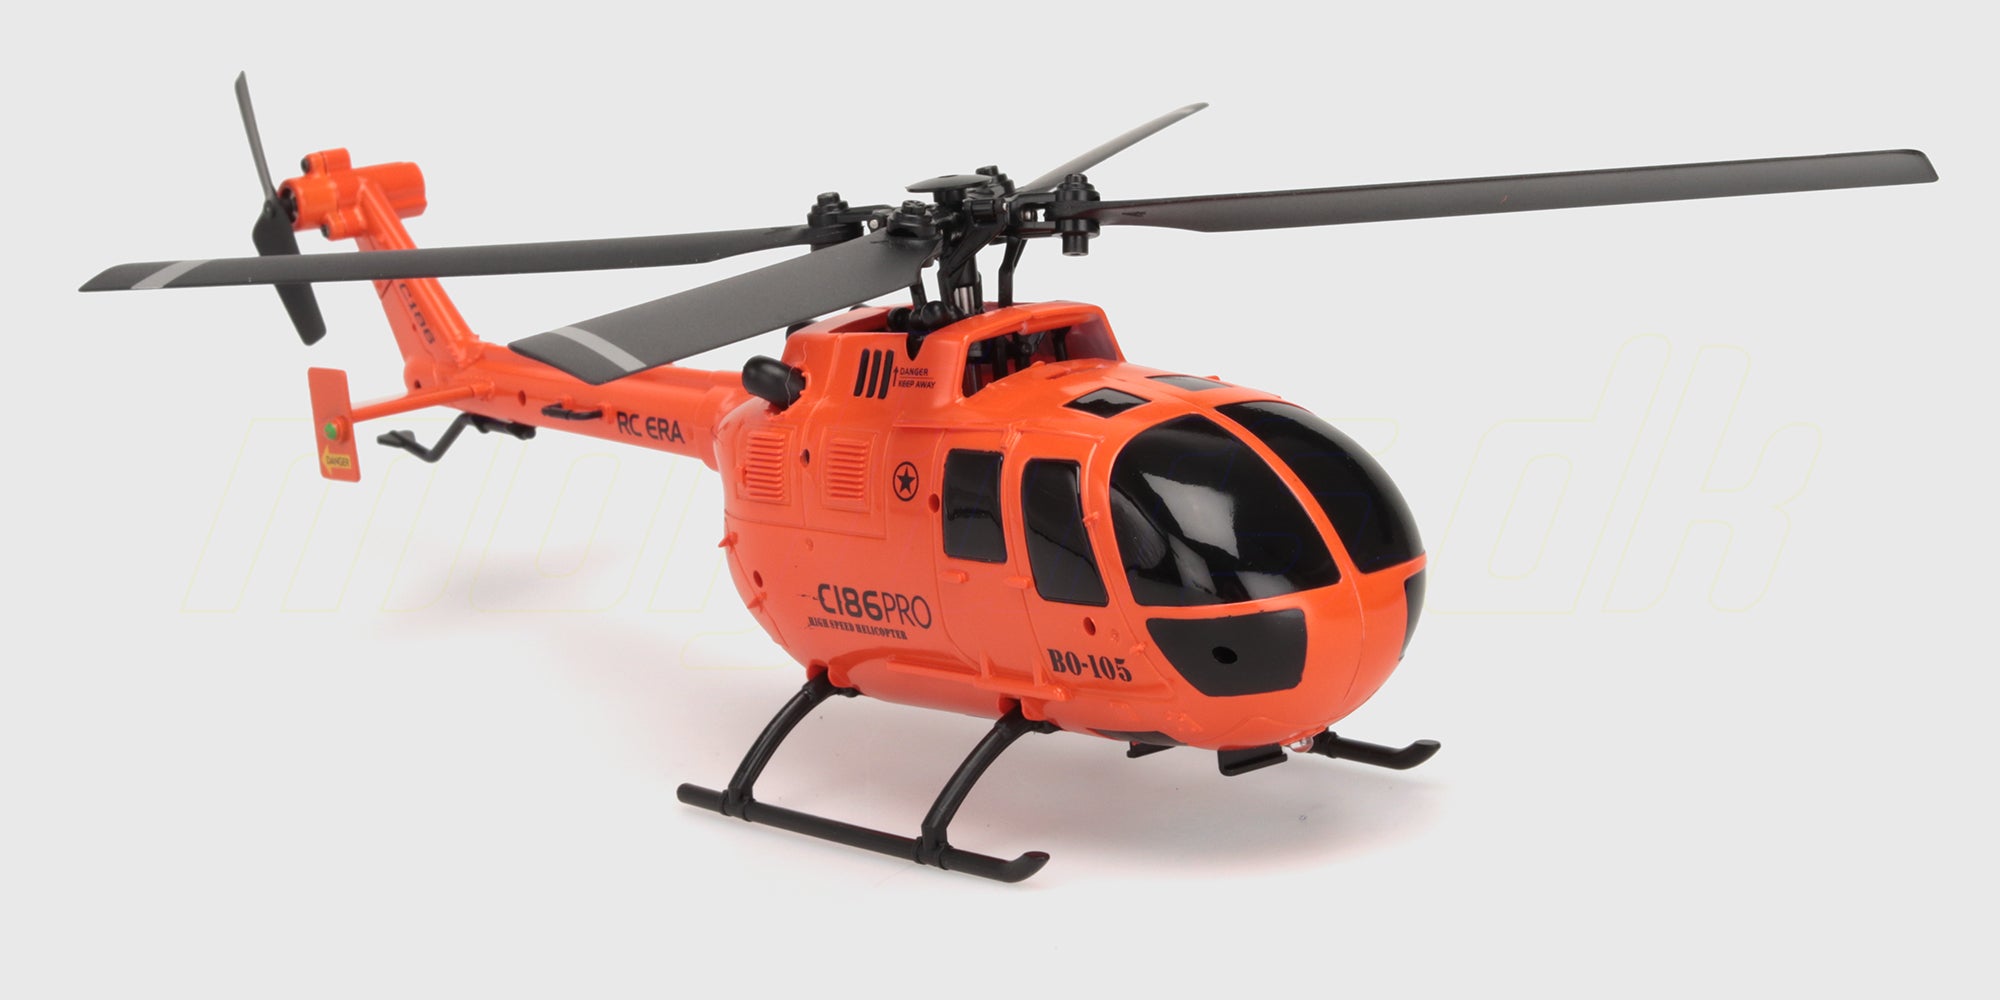 Helikopter C186